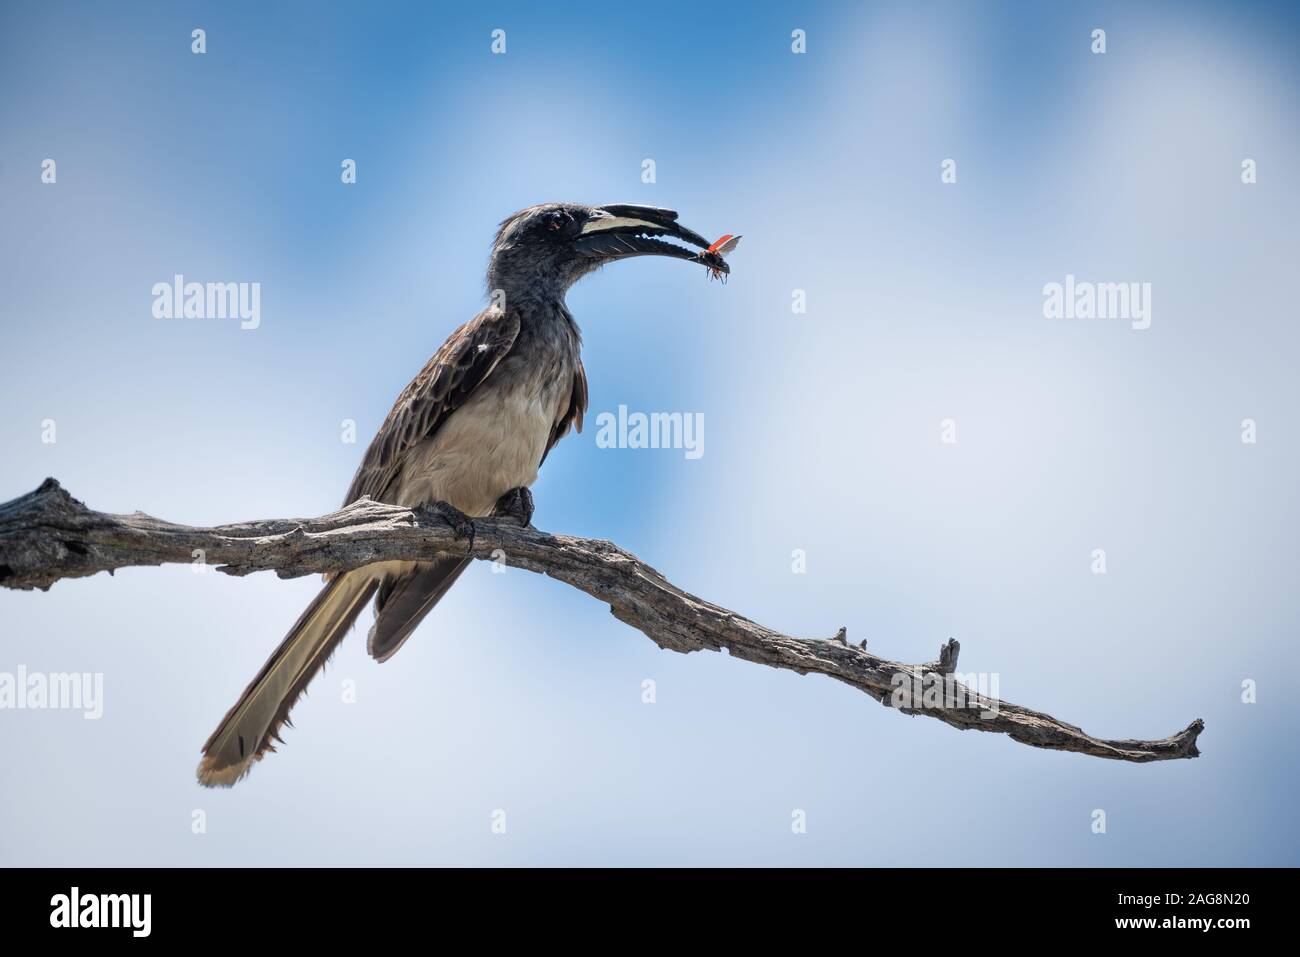 Parco Nazionale di Kruger, Sud Africa. Un africano grigio Hornbill - Tockus nasutus - si siede su un ramo secco con un insetto alato detenute nel suo becco Foto Stock